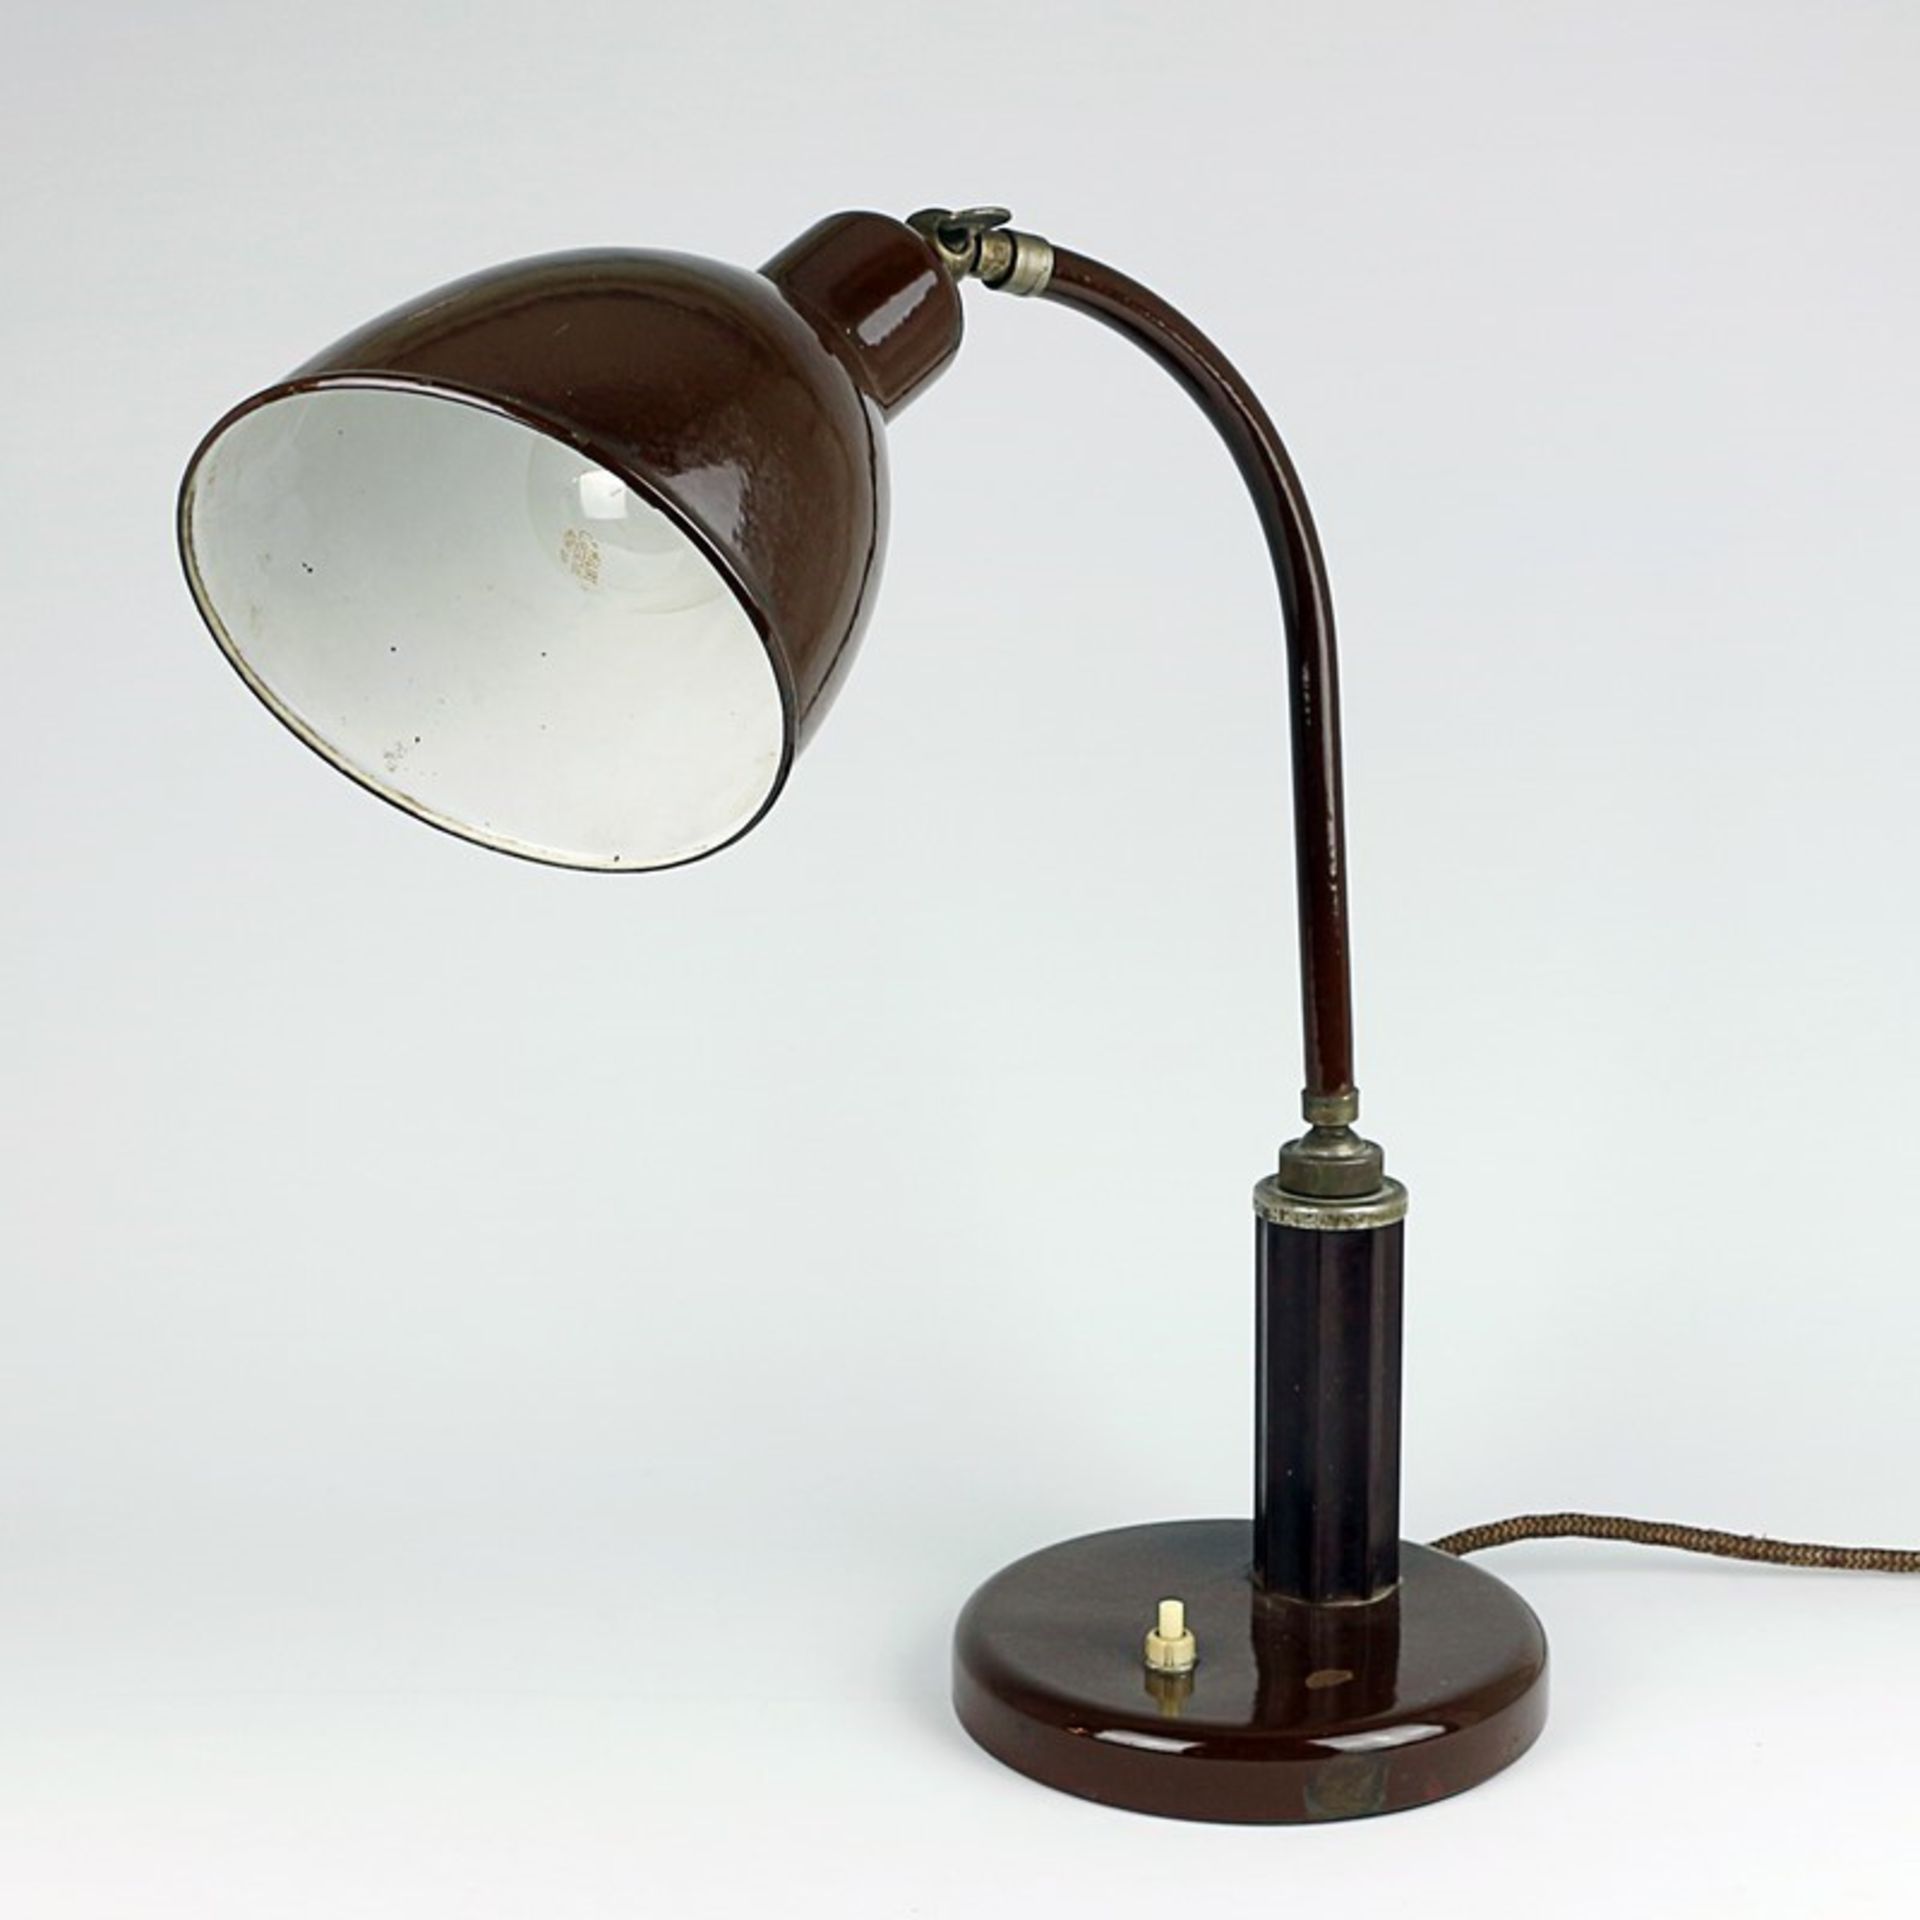 Tischlampe um 1925/30, Metall/Bakelit/Emaille, braun, einflammig, im Stil von Christian Dell,